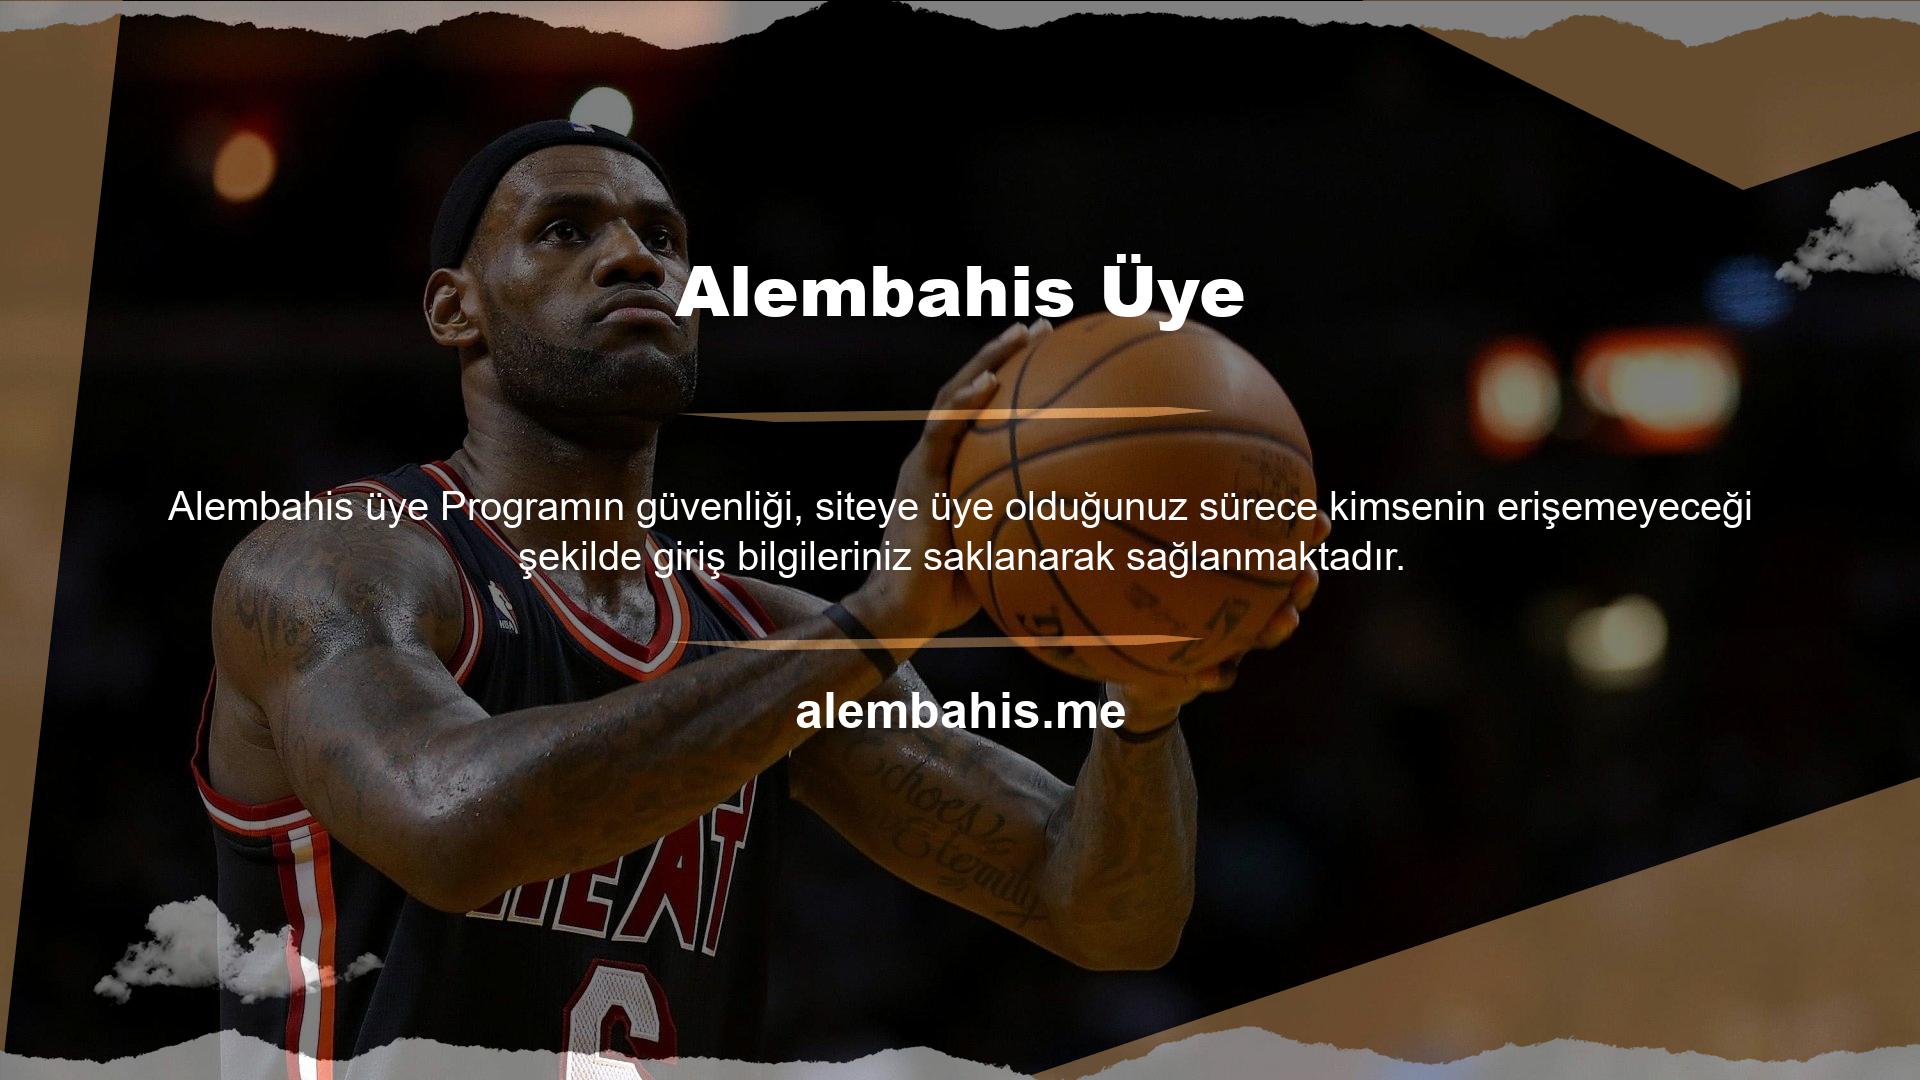 Şikâyet platformu hizmeti veren Alembahis web sitesini ziyaret ederek daha fazla bilgi alabilirsiniz